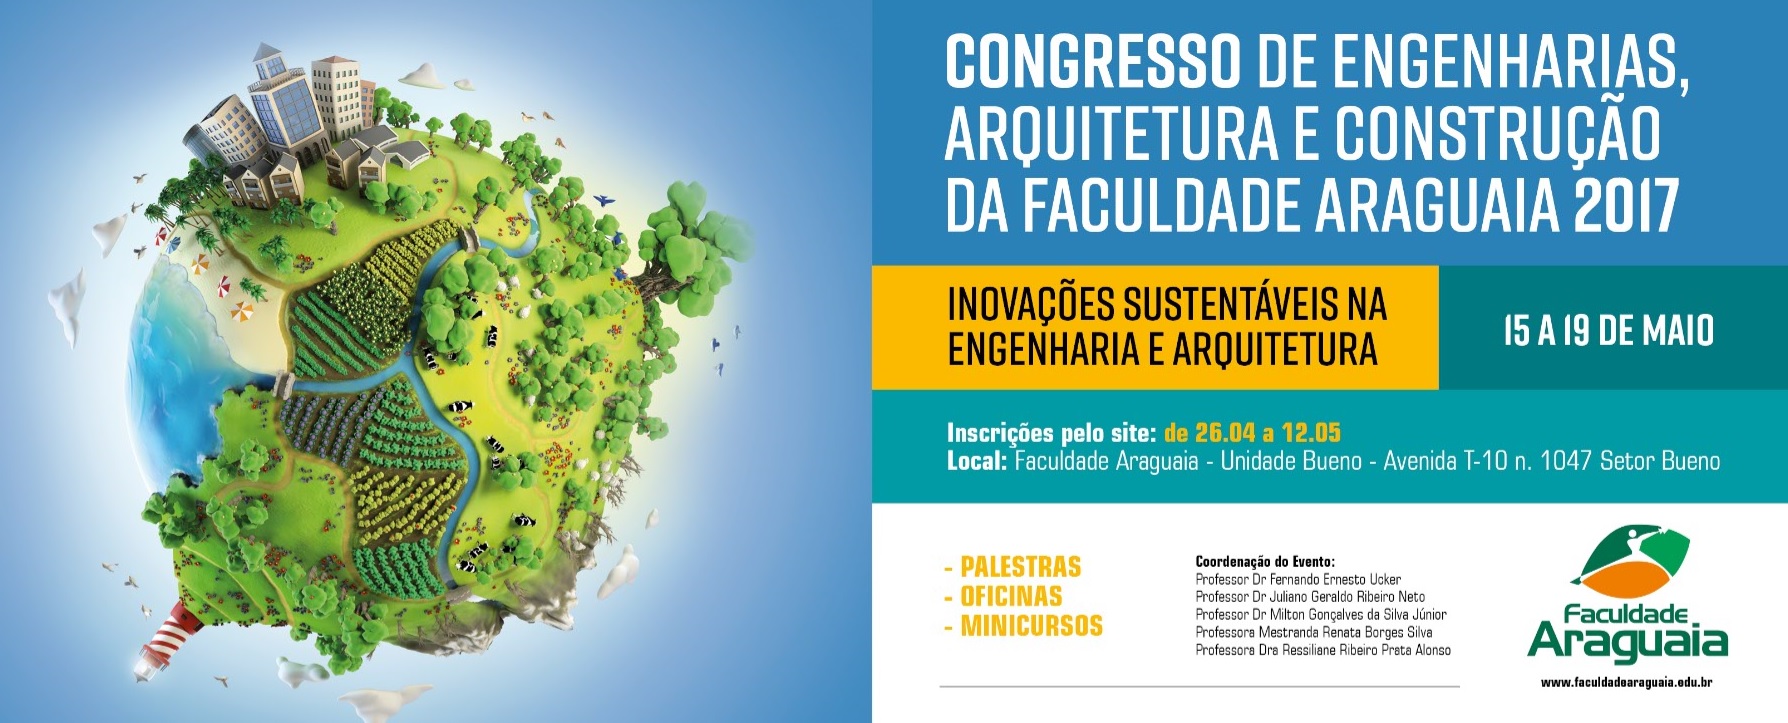 Congresso de Engenharias, Arquitetura e Construção da Faculdade Araguaia: Inovações sustentáveis na Engenharia e Arquitetura